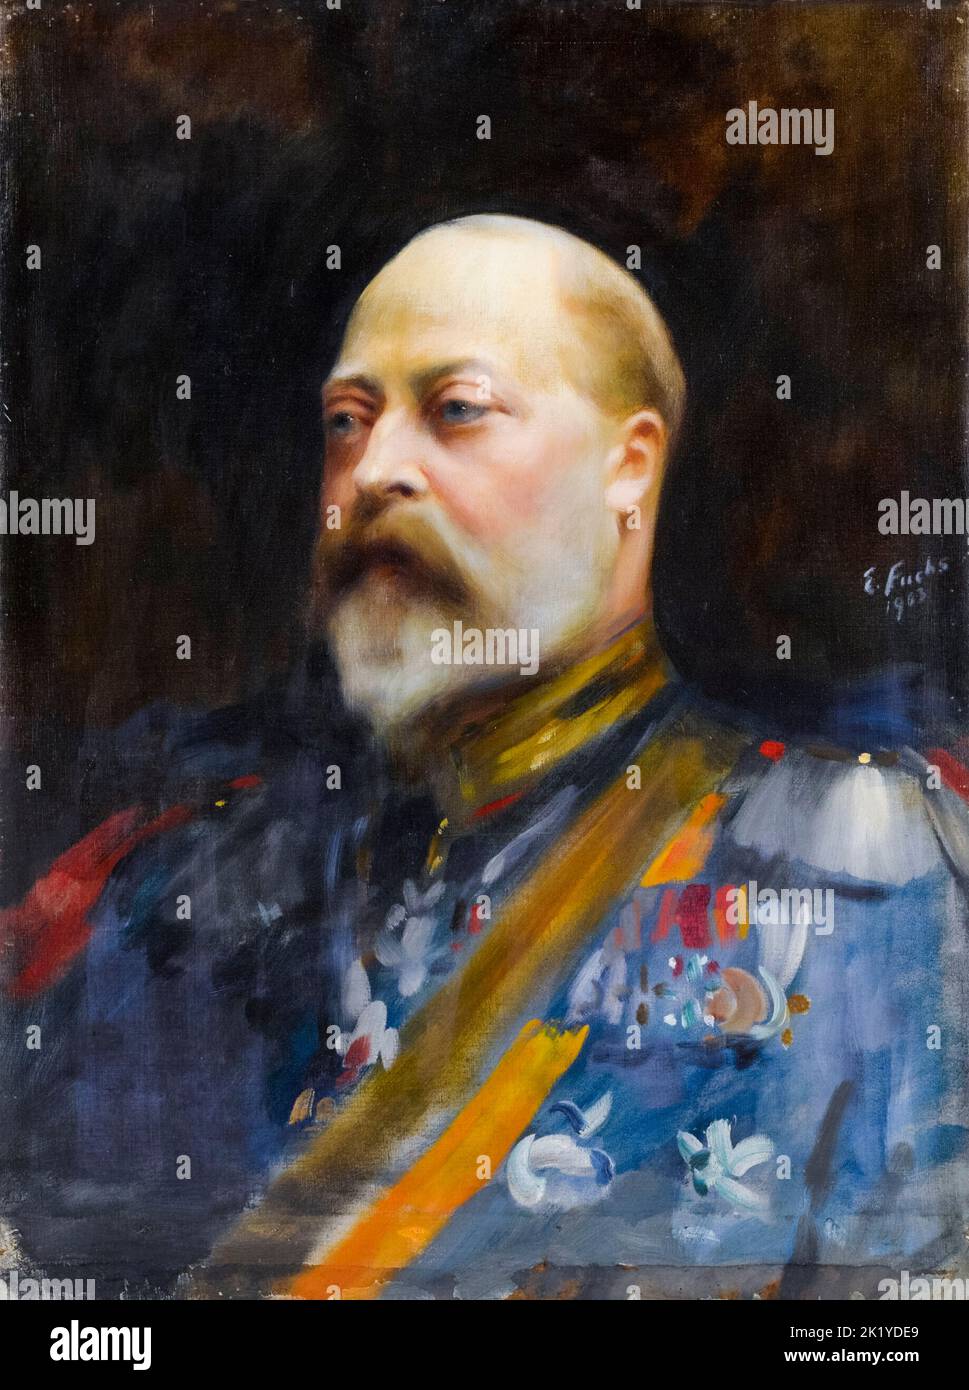 Edward VII (1841-1910), roi du Royaume-Uni de Grande-Bretagne et d'Irlande (1901-1910), portrait peint à l'huile sur toile par Emil Fuchs, 1903 Banque D'Images